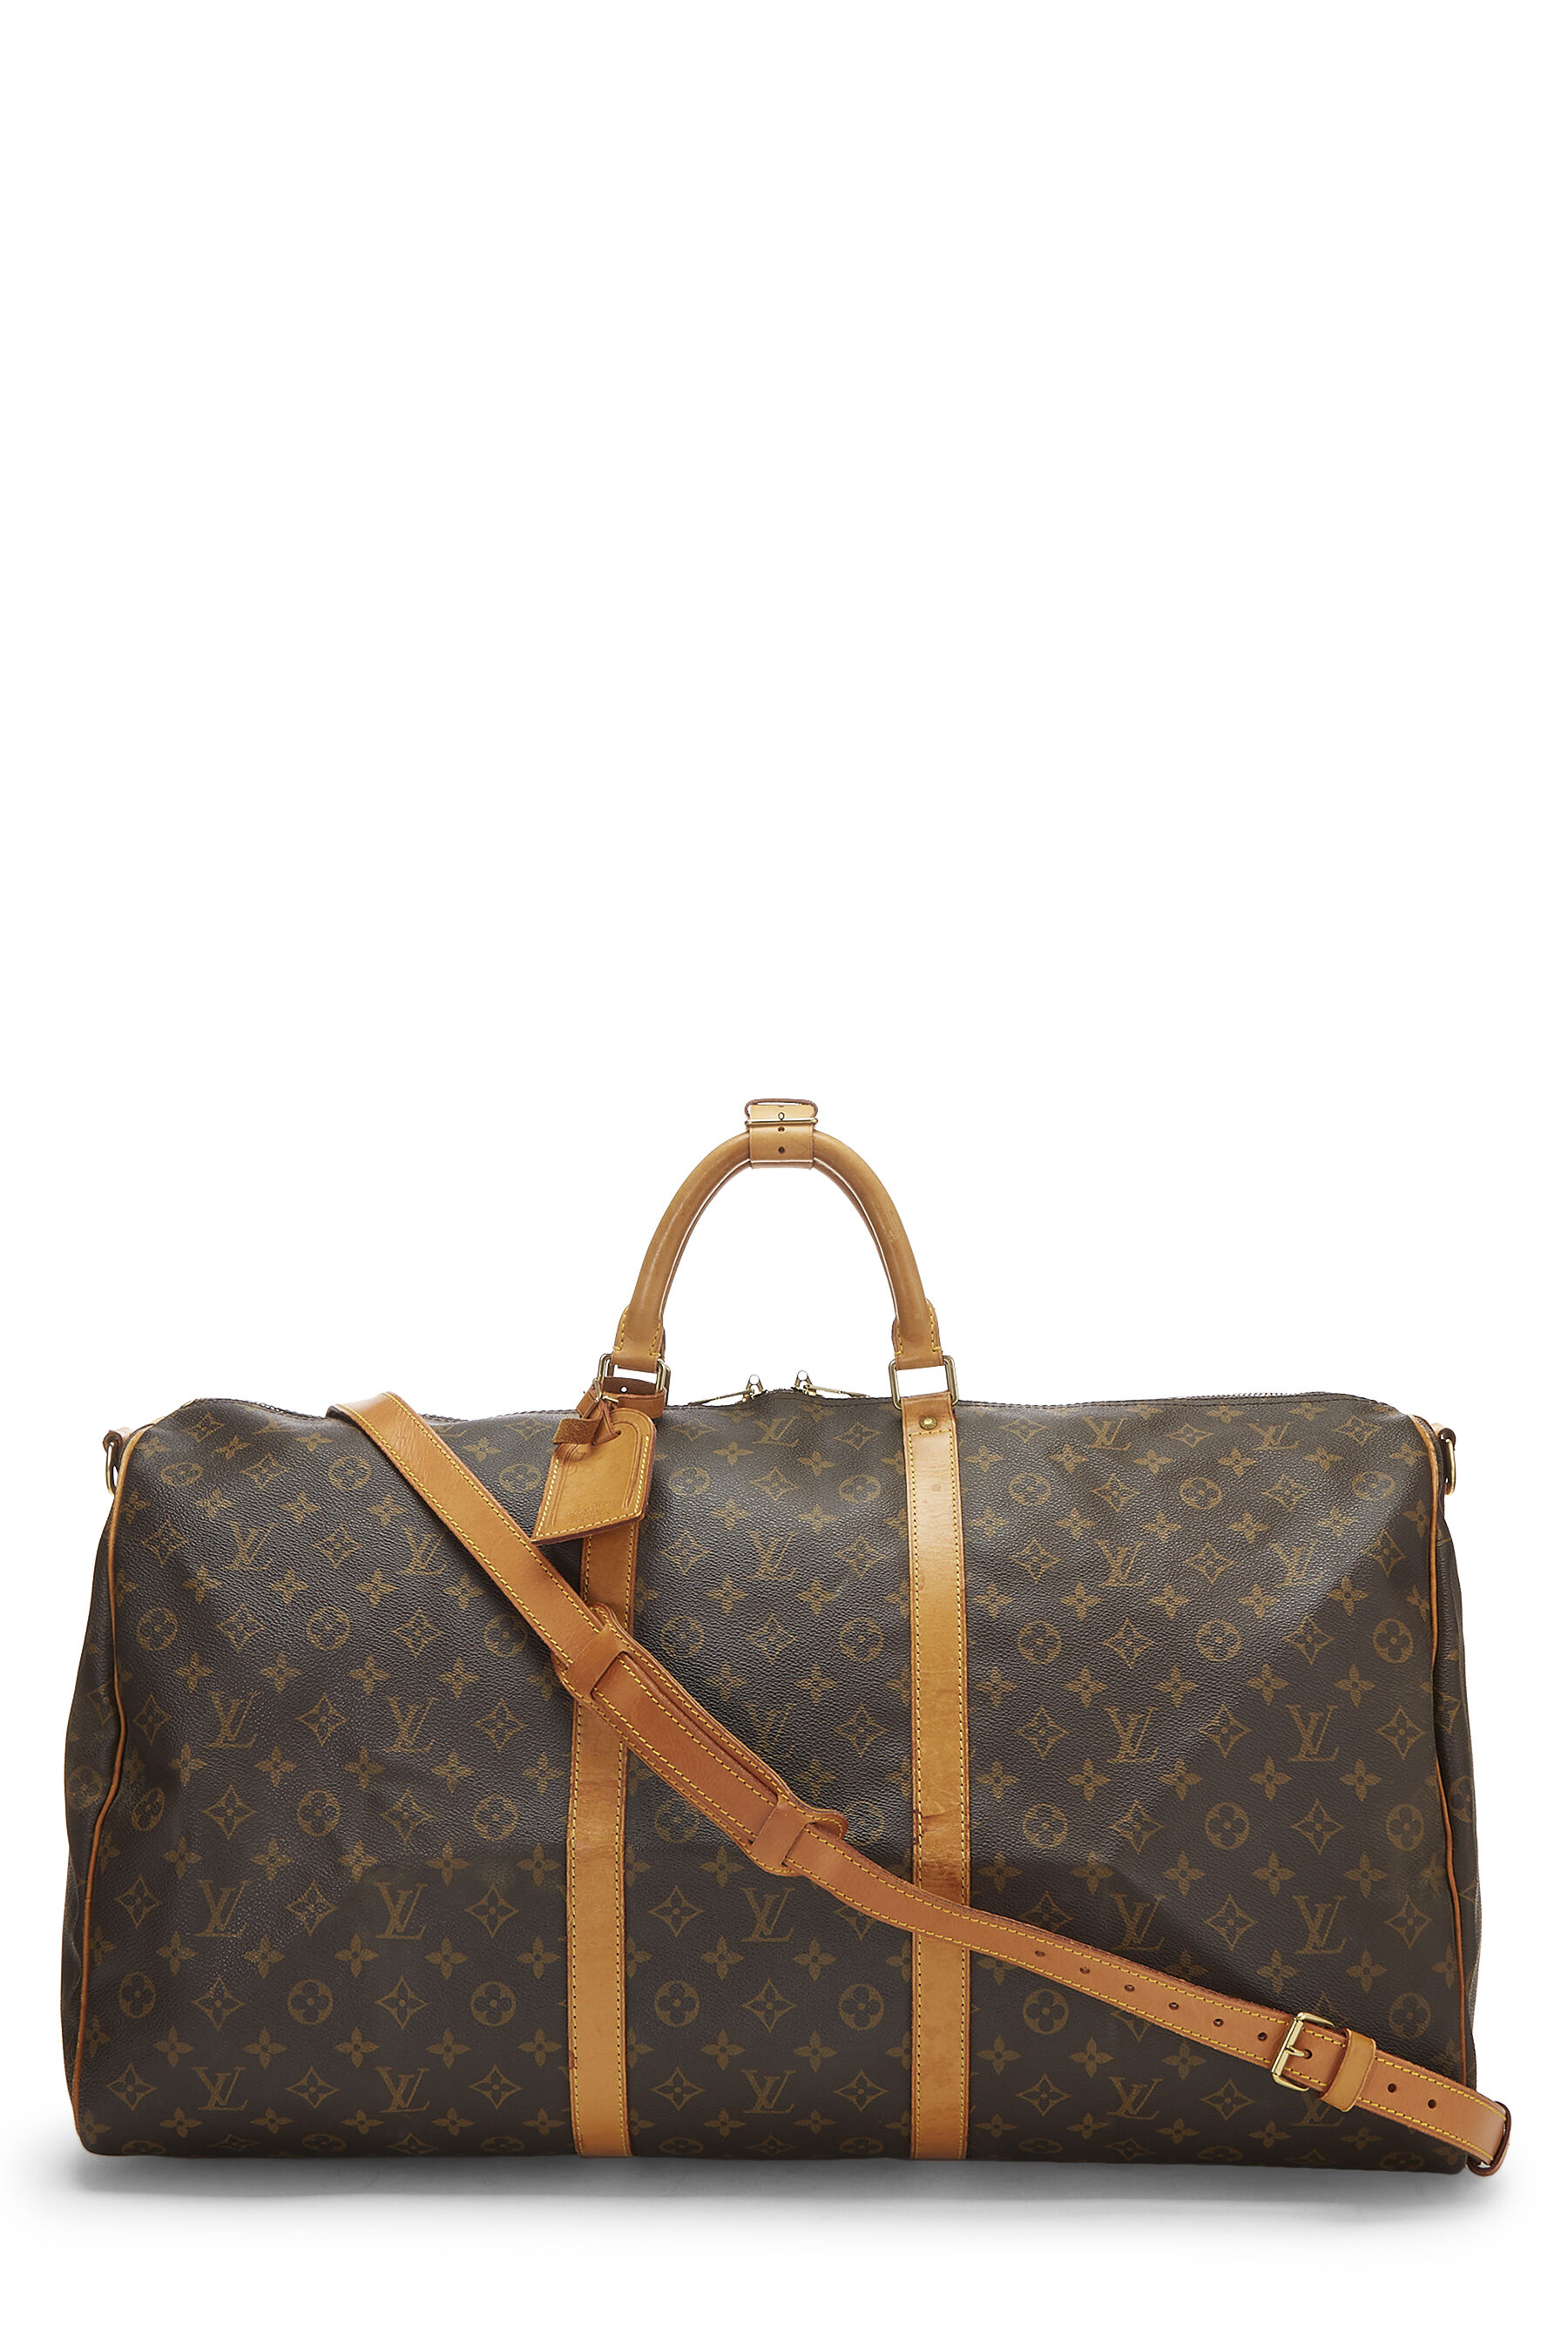 Louis Vuitton Boston Bag Women M41422 Keepall 60 Monogram W/Shoulder Strap